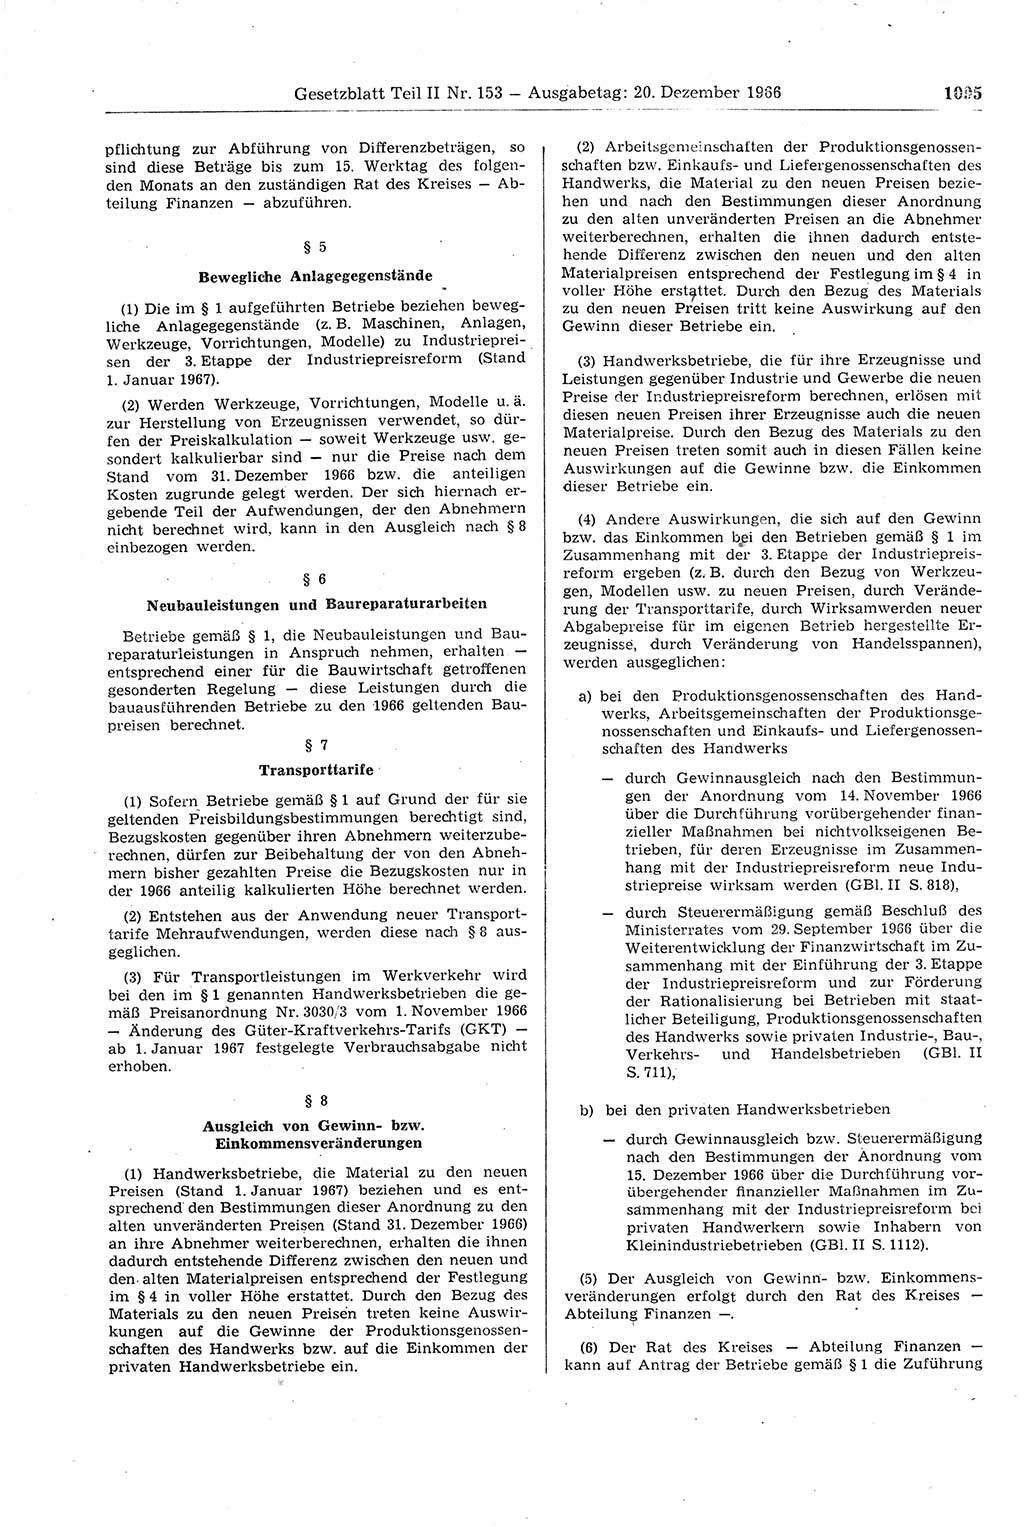 Gesetzblatt (GBl.) der Deutschen Demokratischen Republik (DDR) Teil ⅠⅠ 1966, Seite 1095 (GBl. DDR ⅠⅠ 1966, S. 1095)